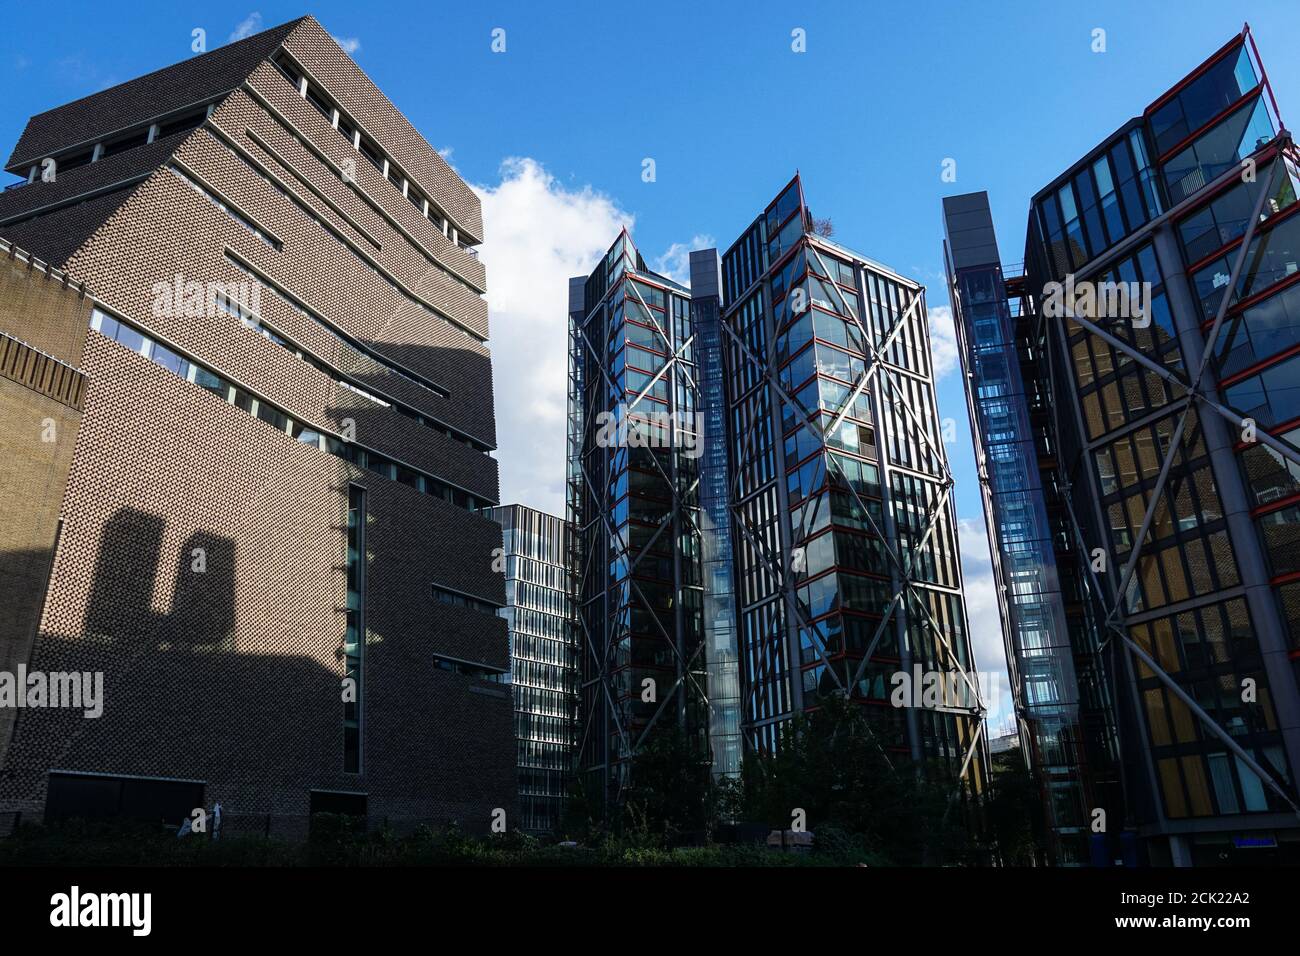 Le niveau de visualisation à Tate Modern et Neo Bankside appartements résidentiels de luxe à Londres Angleterre Royaume-Uni Banque D'Images